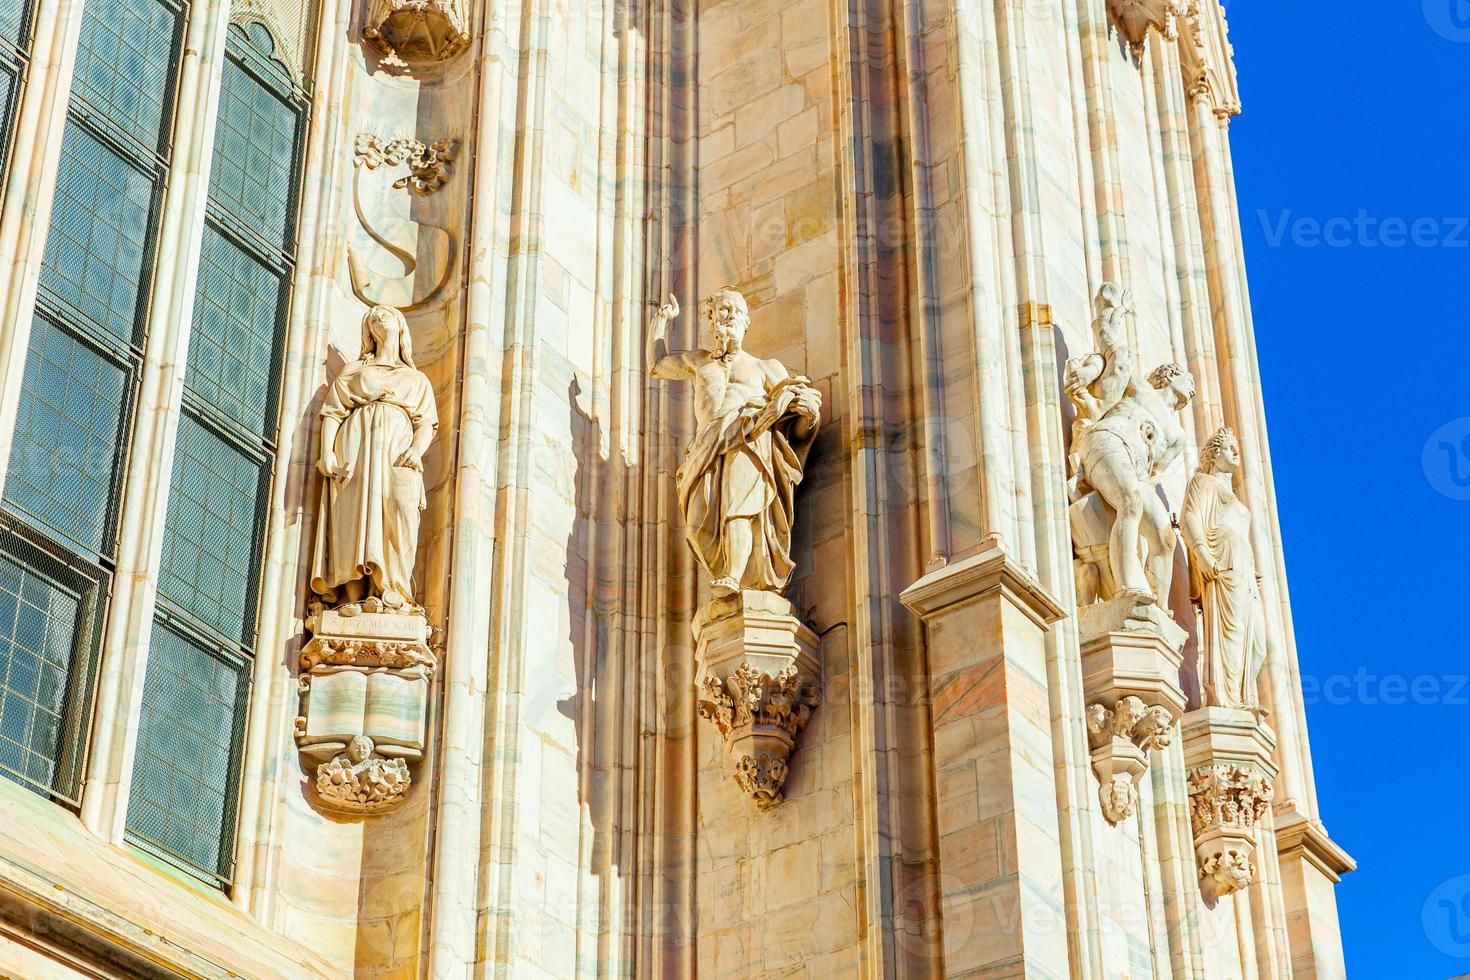 fachada da catedral de milão duomo di milano com pináculos góticos e estátuas de mármore branco. principal atração turística na piazza em milão, lombardia, itália. visão de grande angular da antiga arquitetura gótica e arte. foto